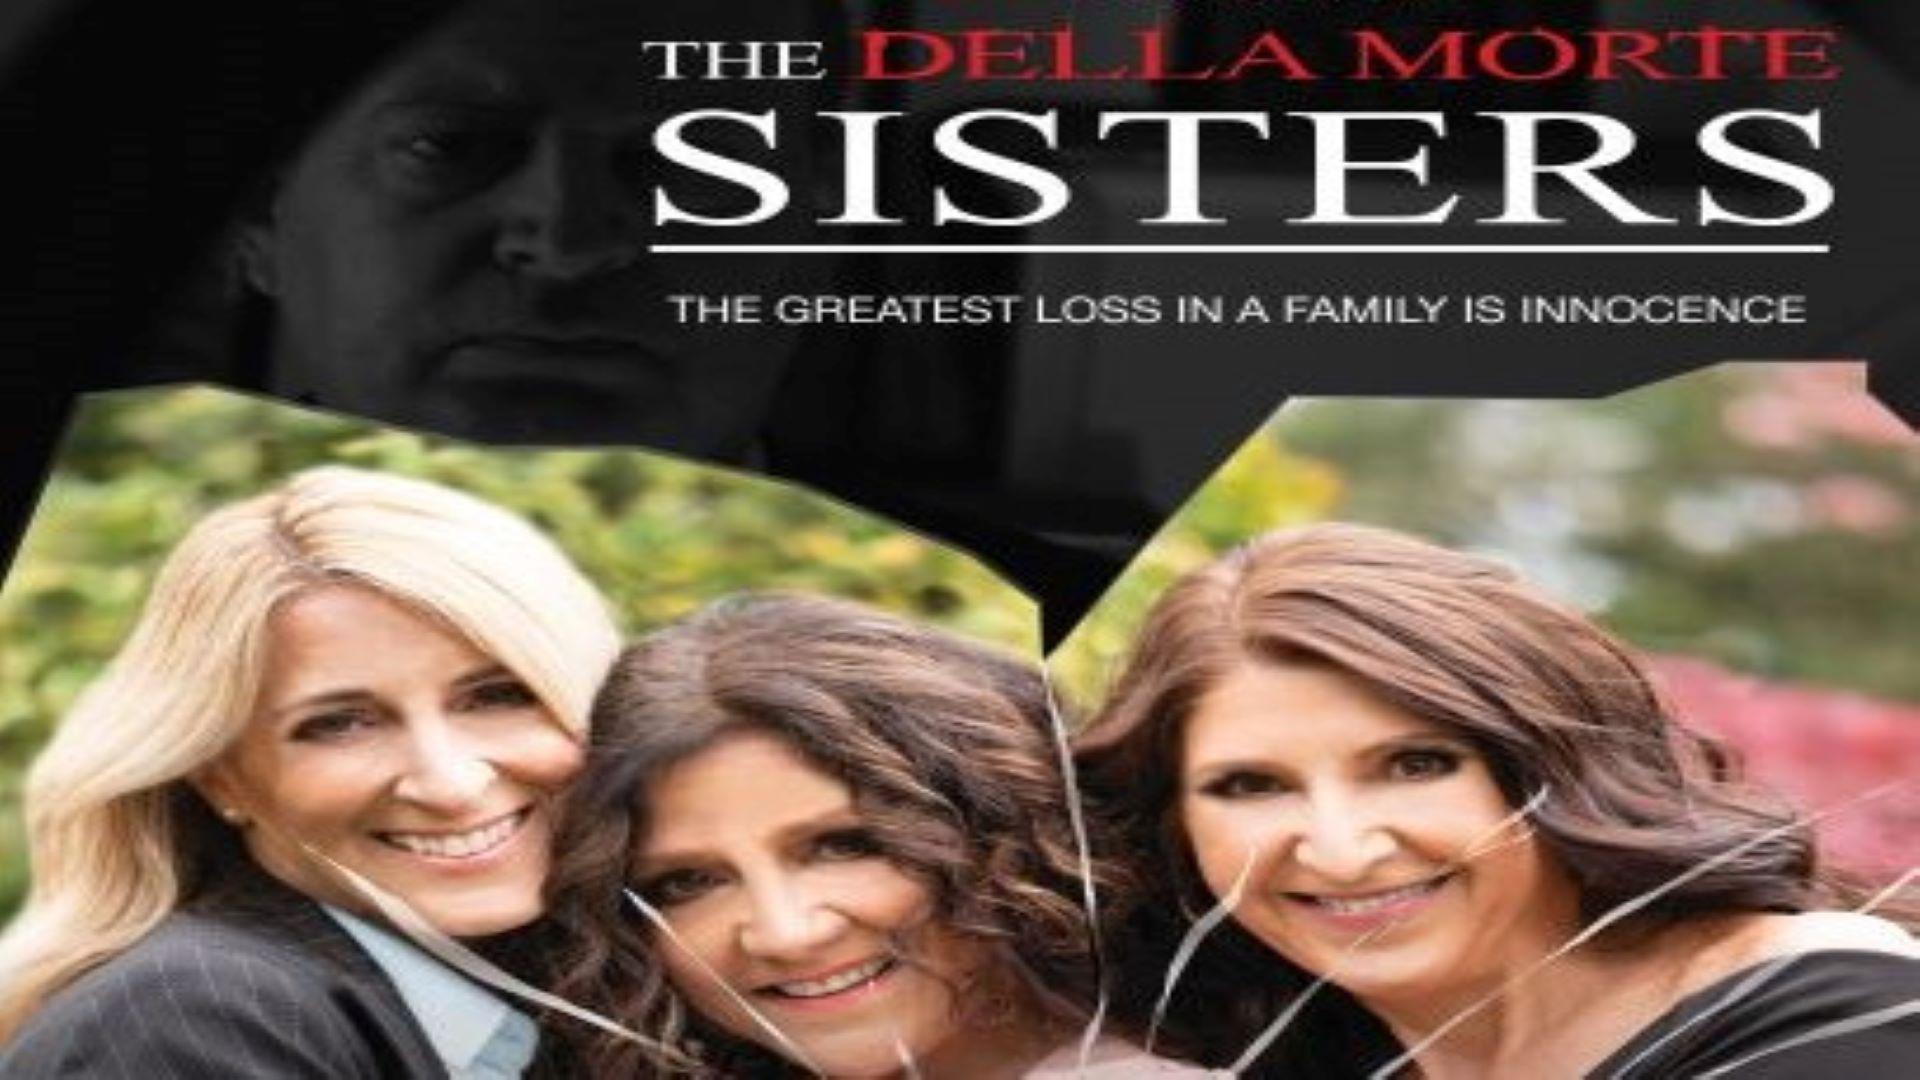 The Della Morte Sisters